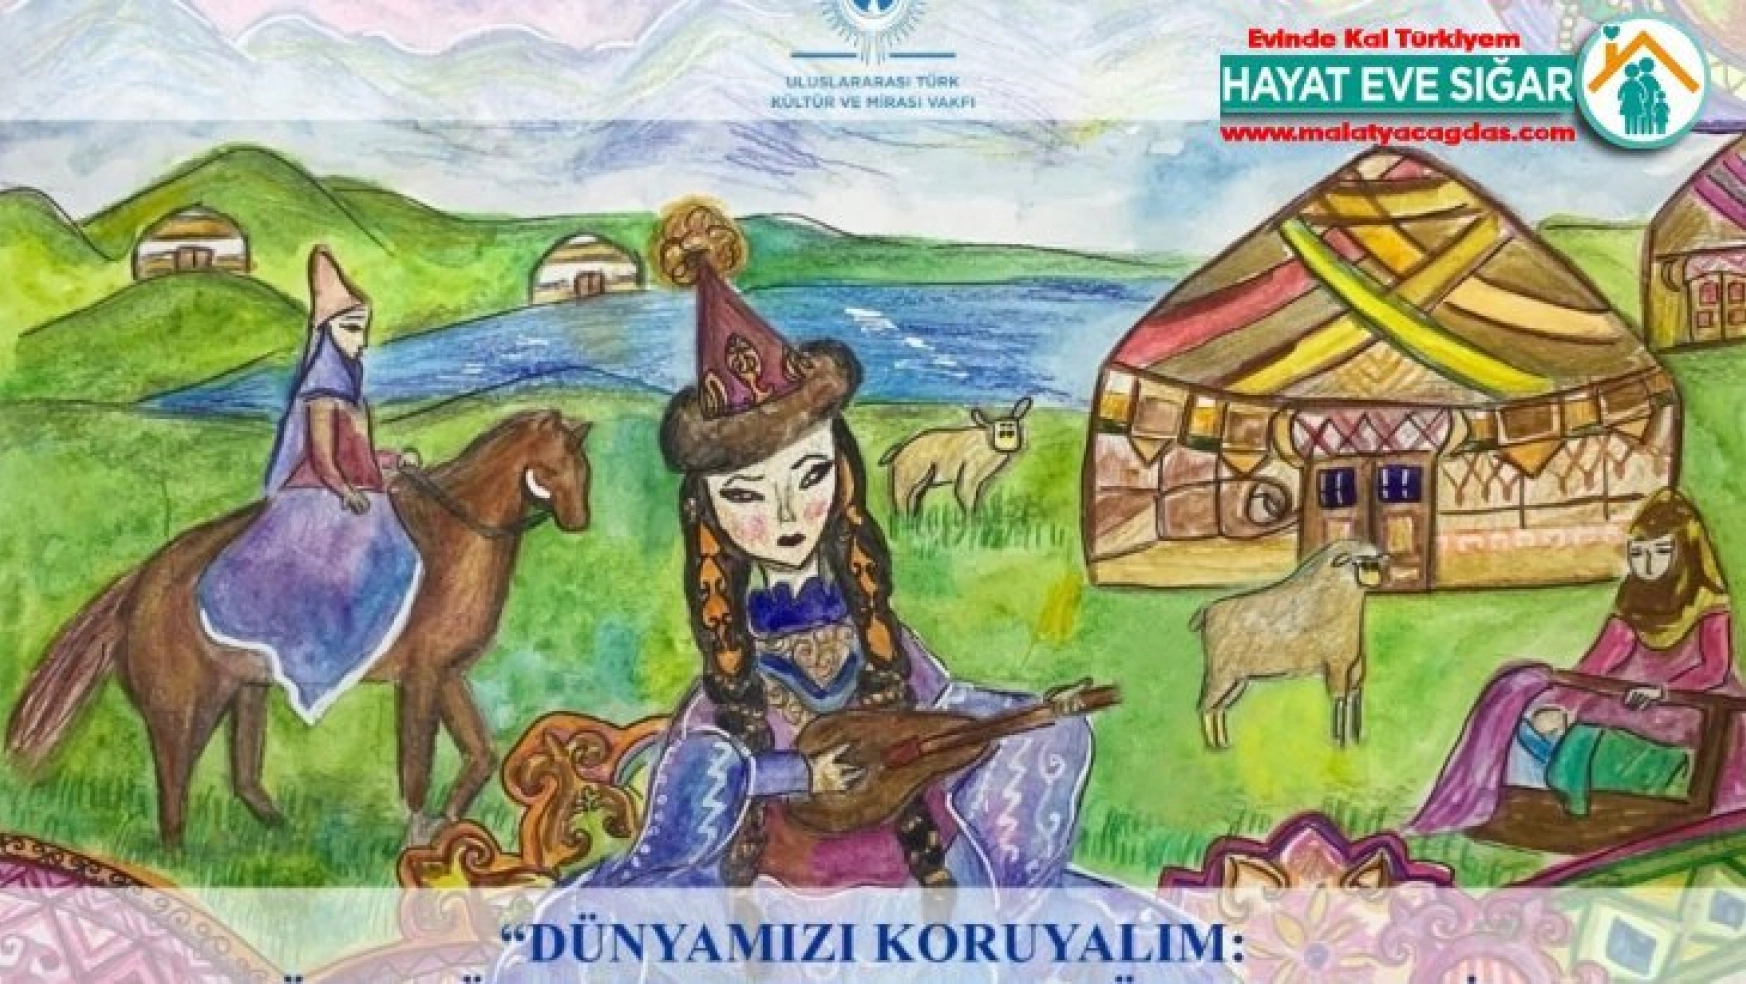 Uluslararası Türk Kültür ve Mirası Vakfı'ndan resim yarışması